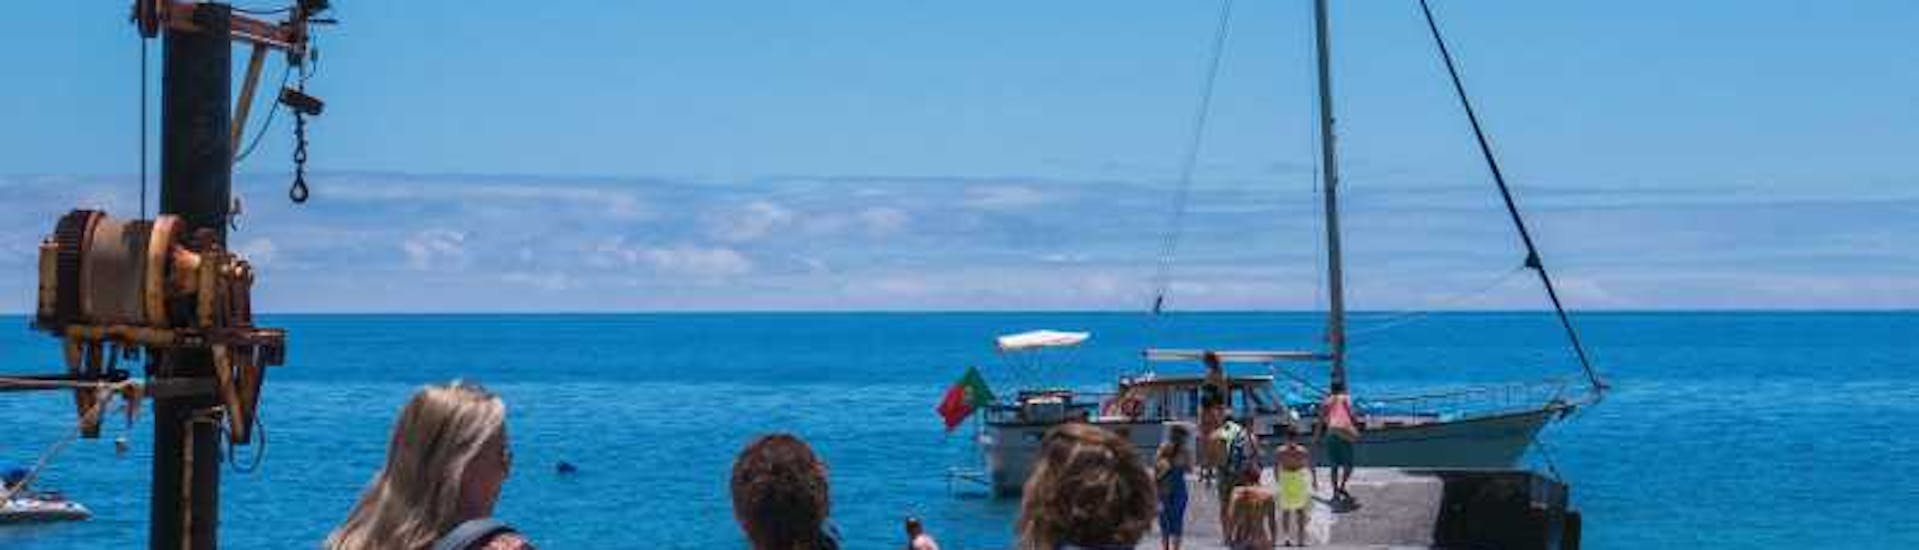 Segelbootstour, mit den Booten von Gaviao Madeira, zur Bucht von Ponta do Sol mit Delfinbeobachtung & Mittagessen.